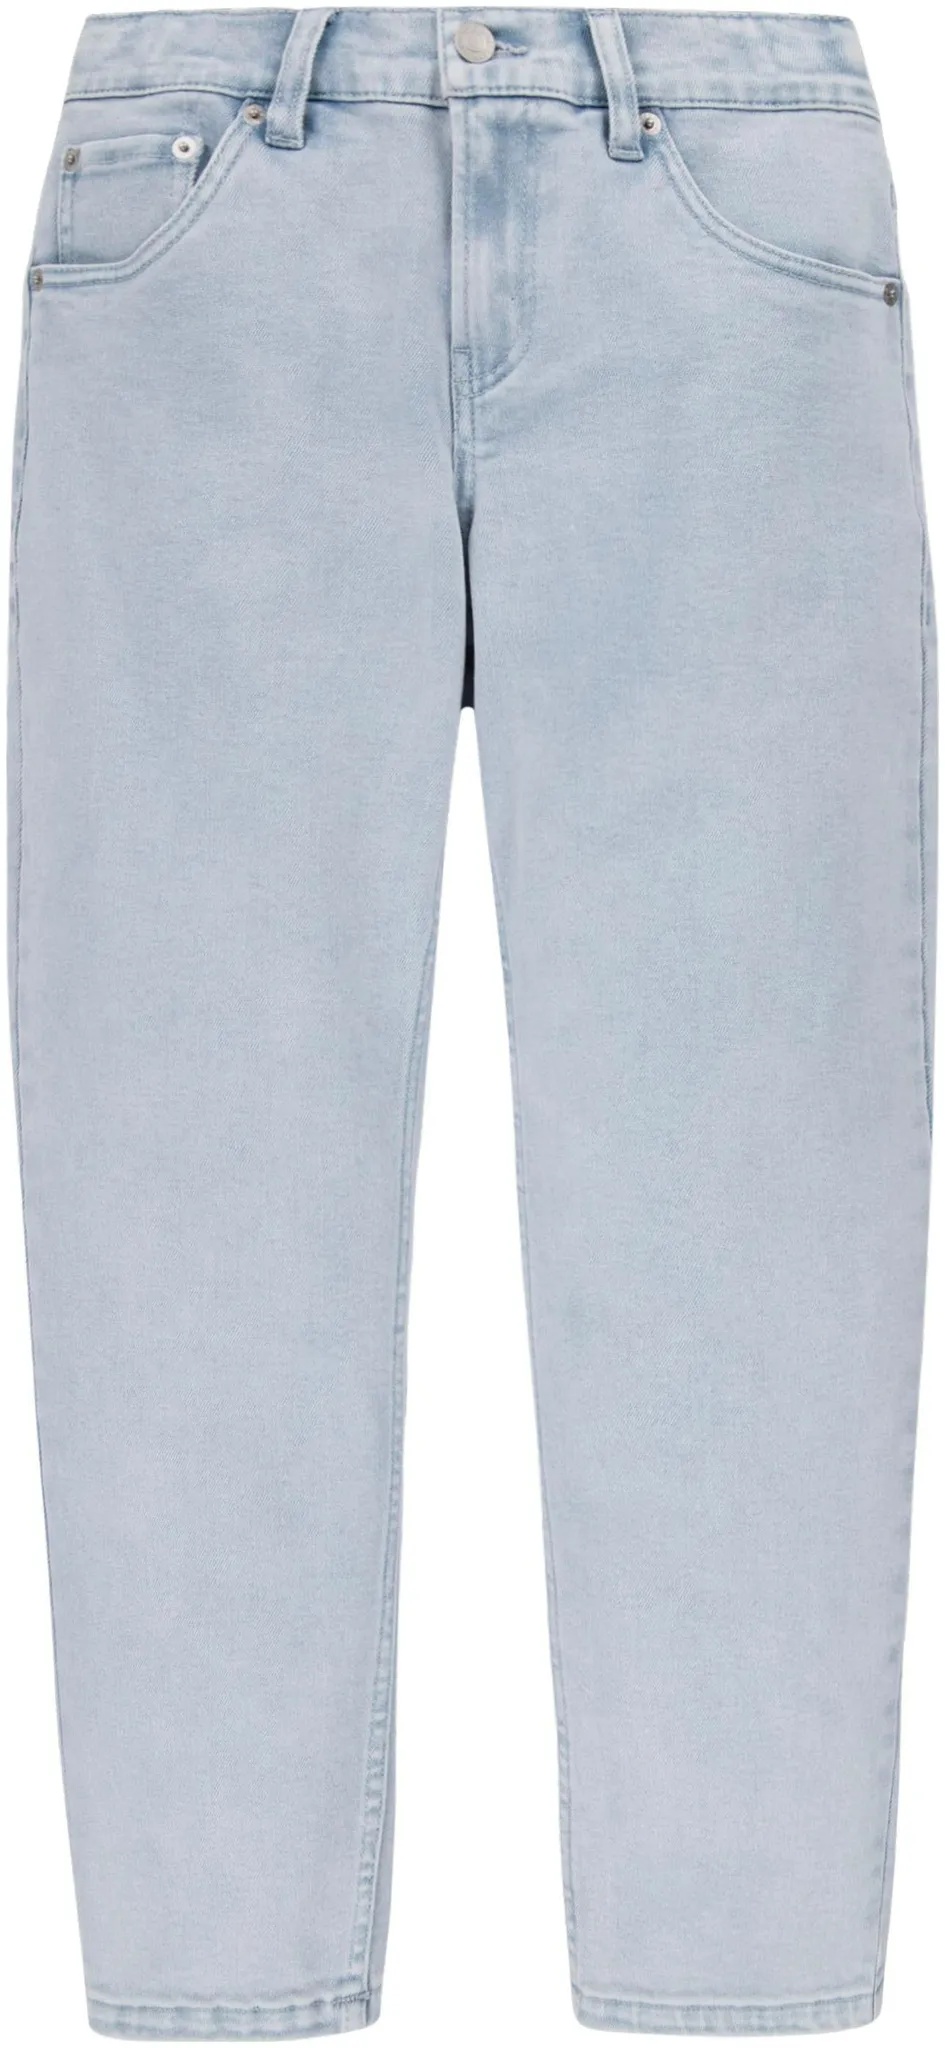 Stretch-Jeans LEVI'S KIDS "LVB STAY LOOSE TAPER JEANS" Gr. 10 (140), N-Gr, silberfarben (silver linin) Jungen Jeans Bekleidung for BOYS